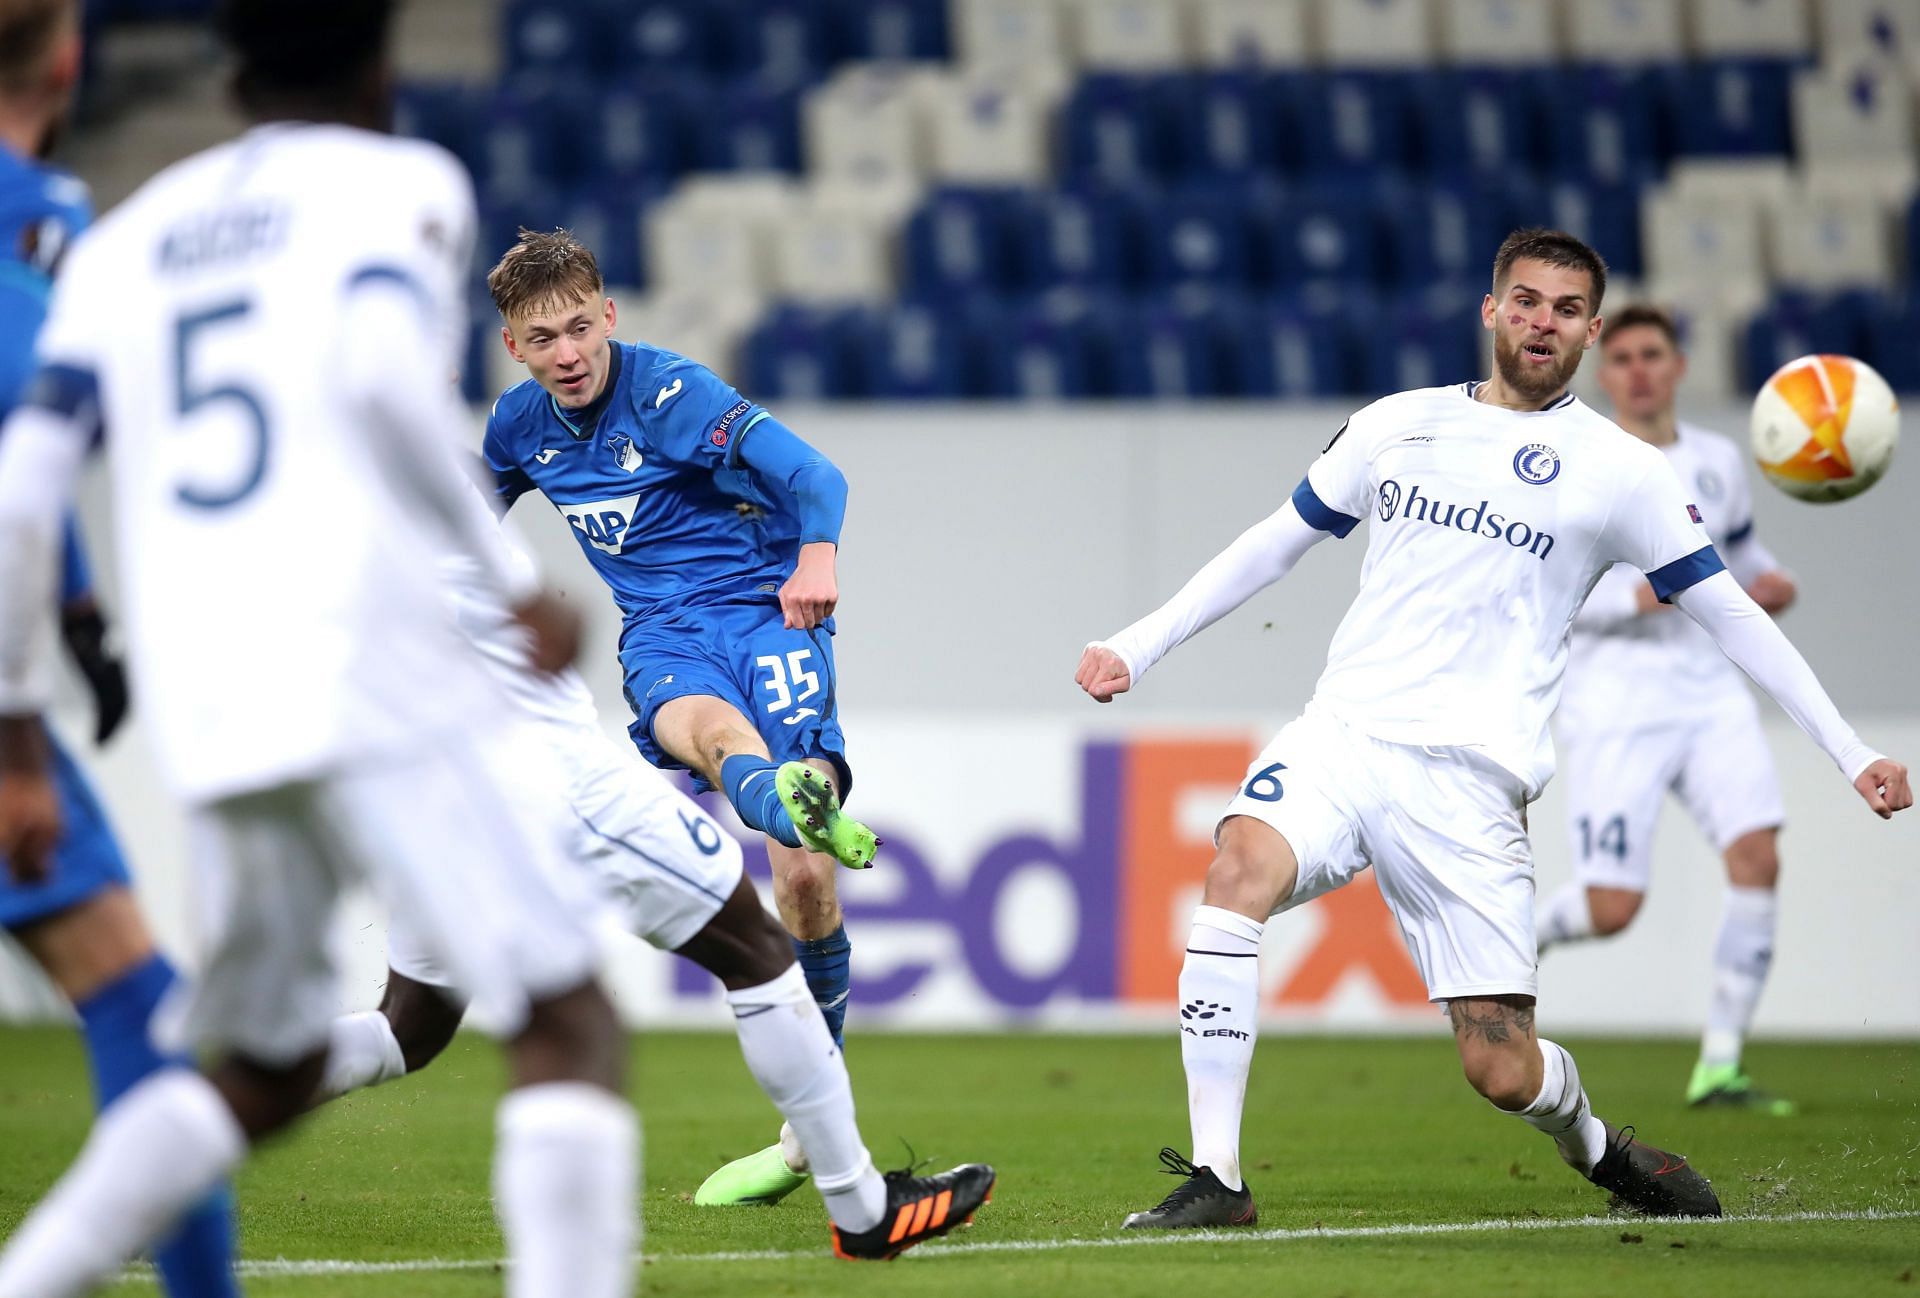 KAA Gent will face Standard Liege on Friday - Jupiler Pro League